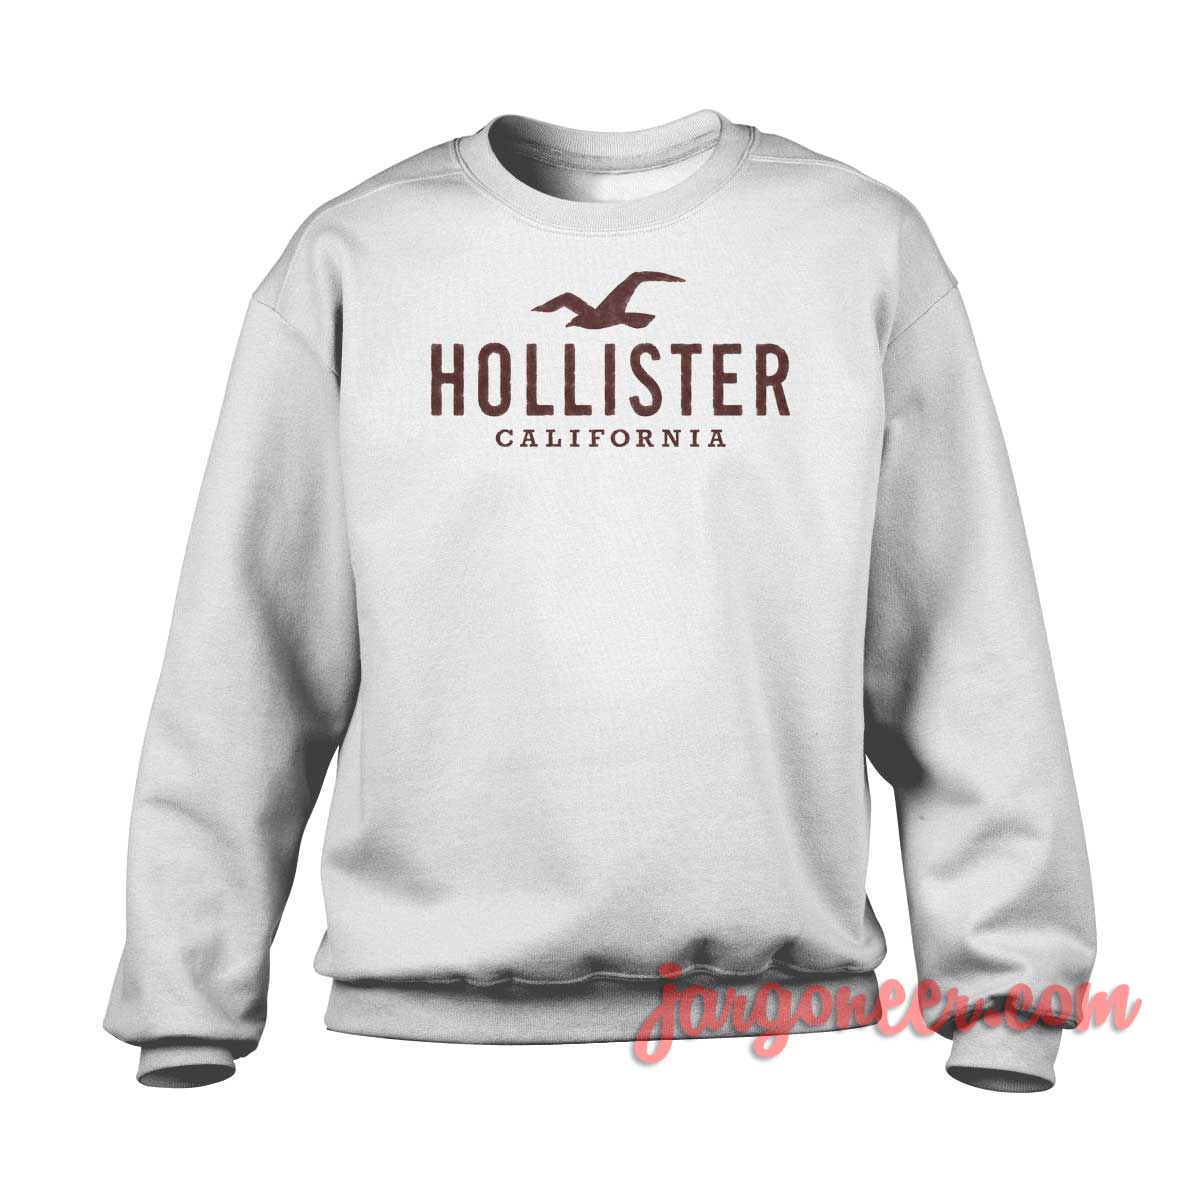 Hollister California 1 - Shop Unique Graphic Cool Shirt Designs